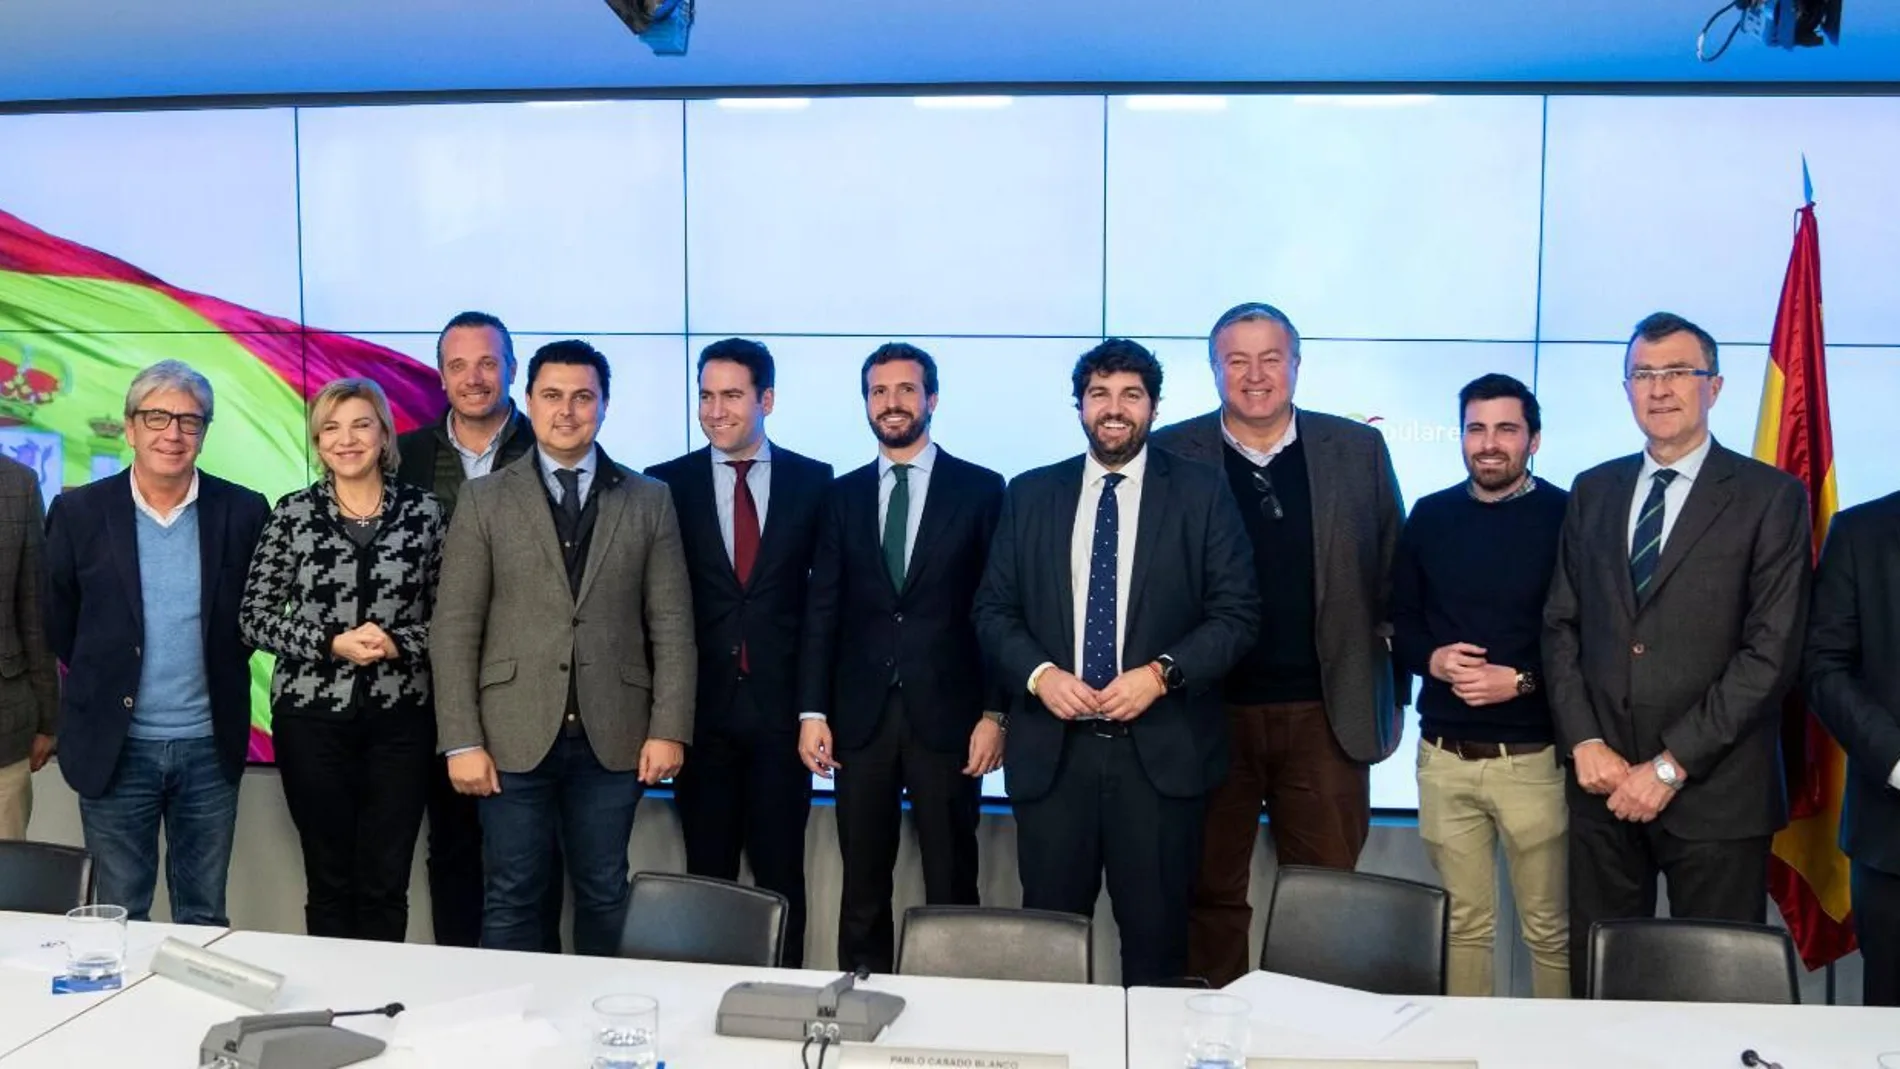 El presidente regional, Fernando López Miras, hoy en la Junta Directiva del PP en Madrid junto a Pablo Casado y Teodoro García Egea